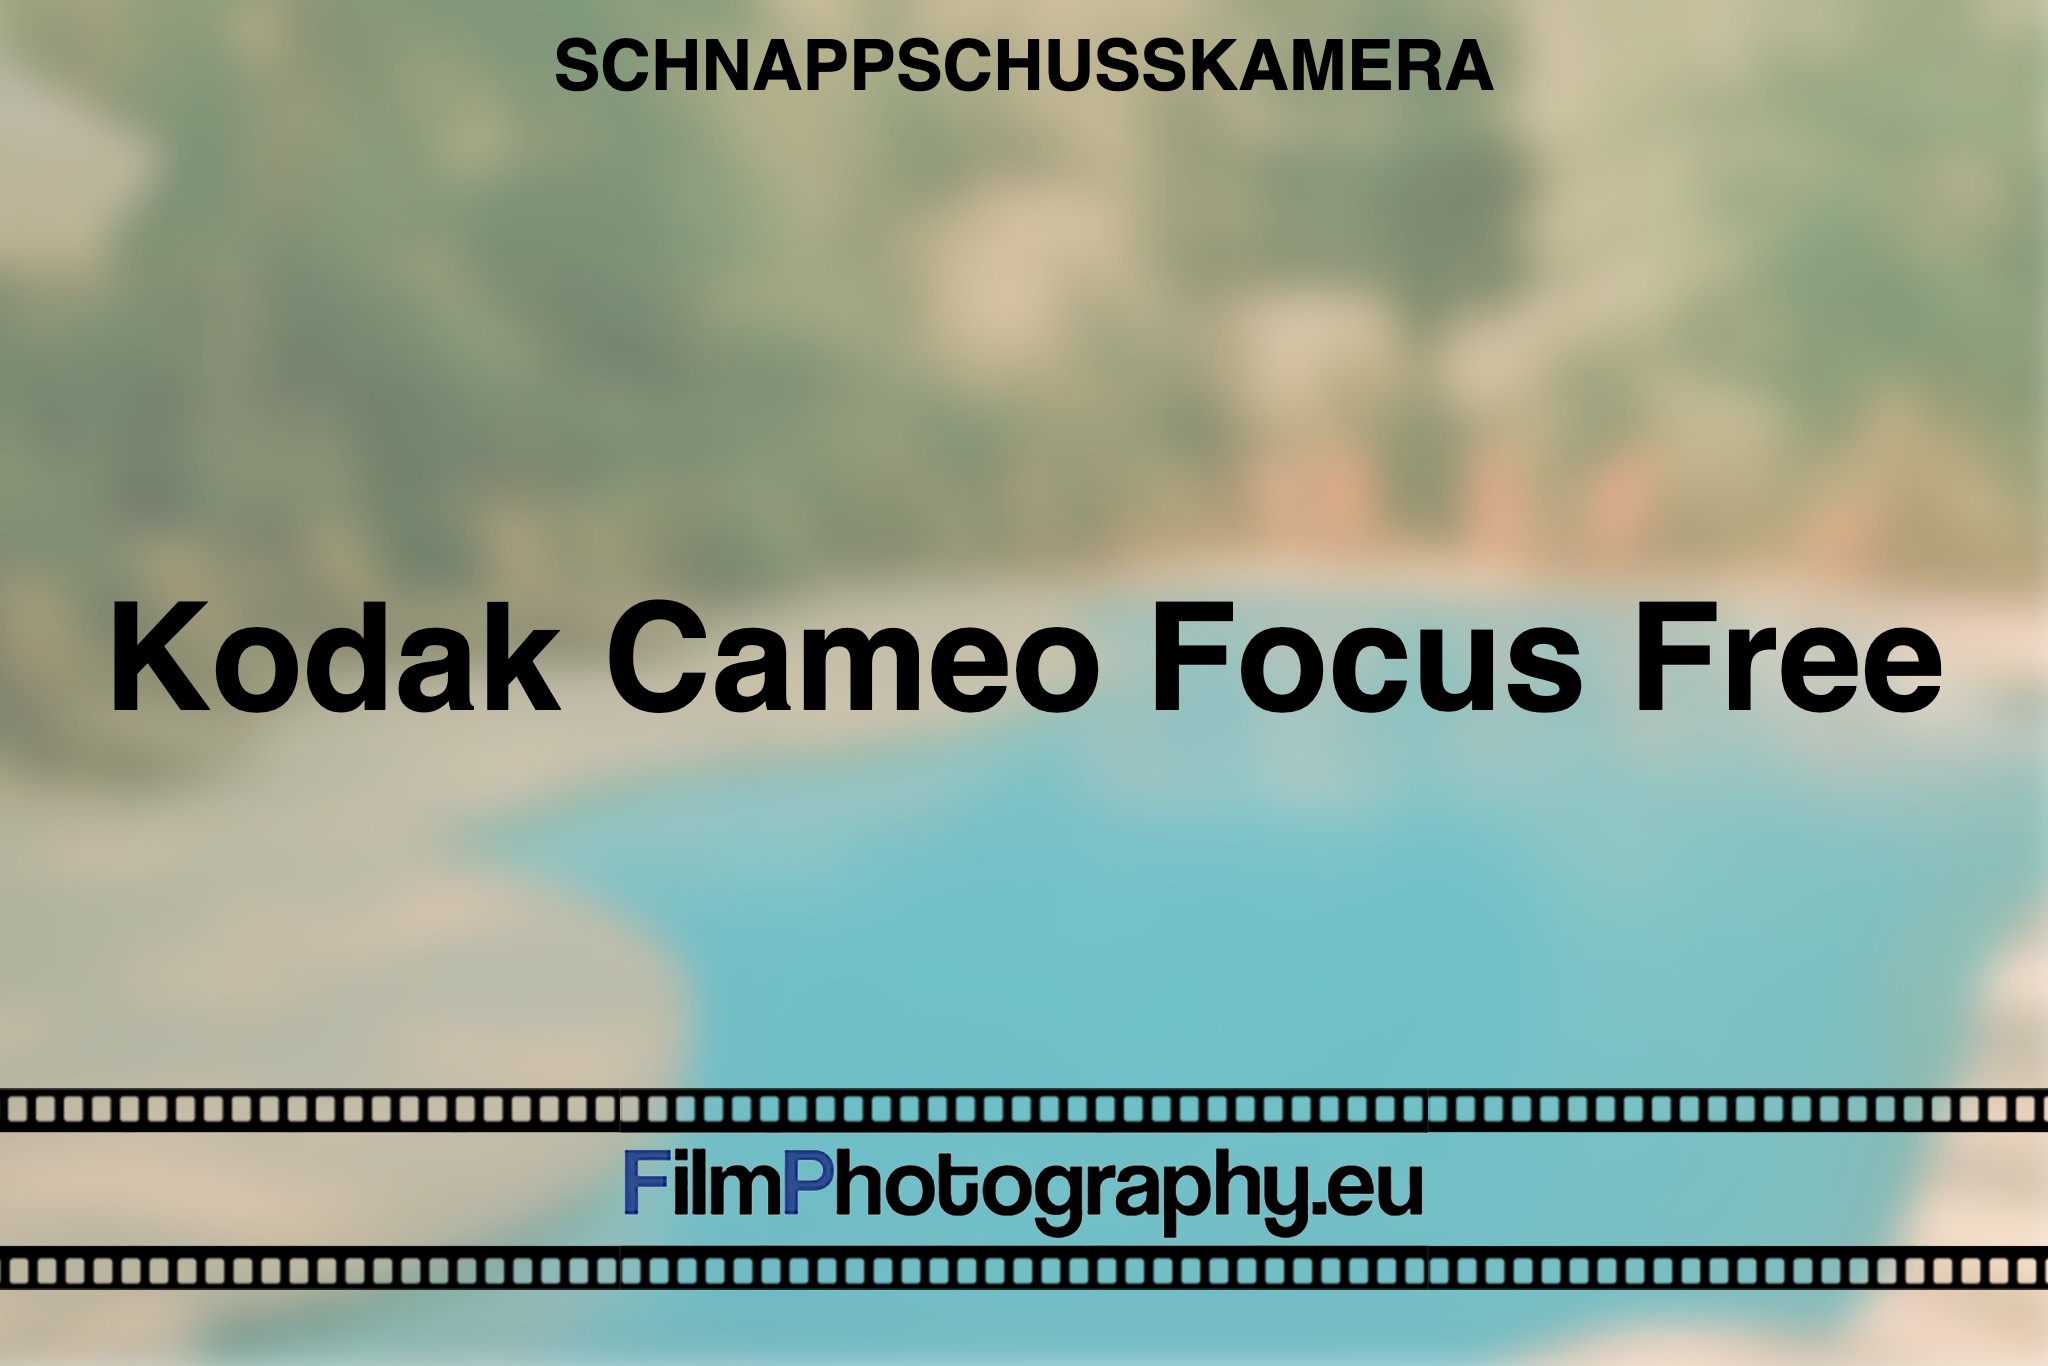 kodak-cameo-focus-free-schnappschusskamera-bnv